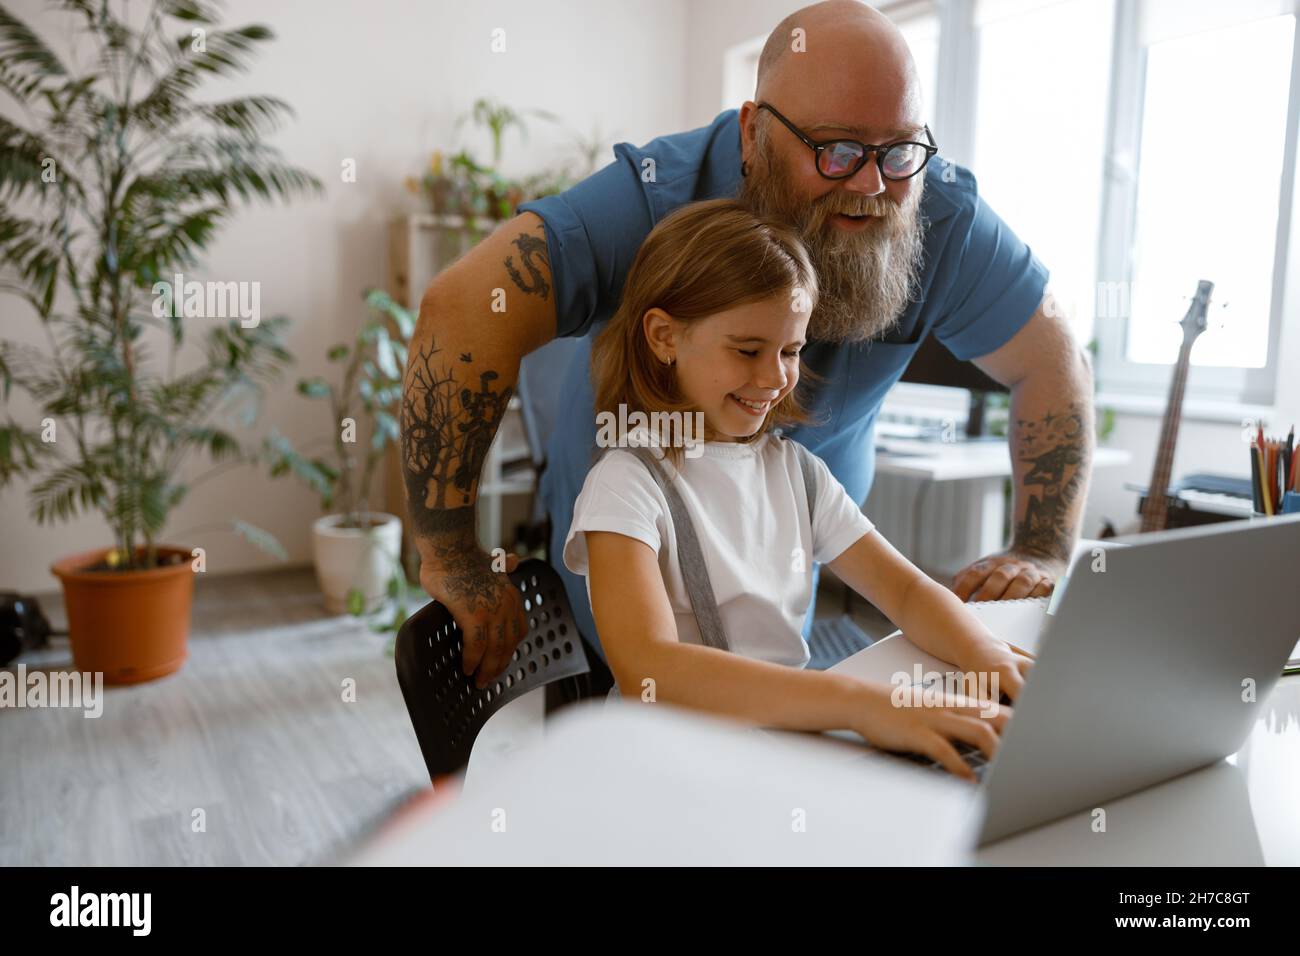 Ein glücklicher Vater mit einem kleinen Mädchen macht am Tisch im Zimmer eine Hausfrau auf einem modernen Laptop Stockfoto